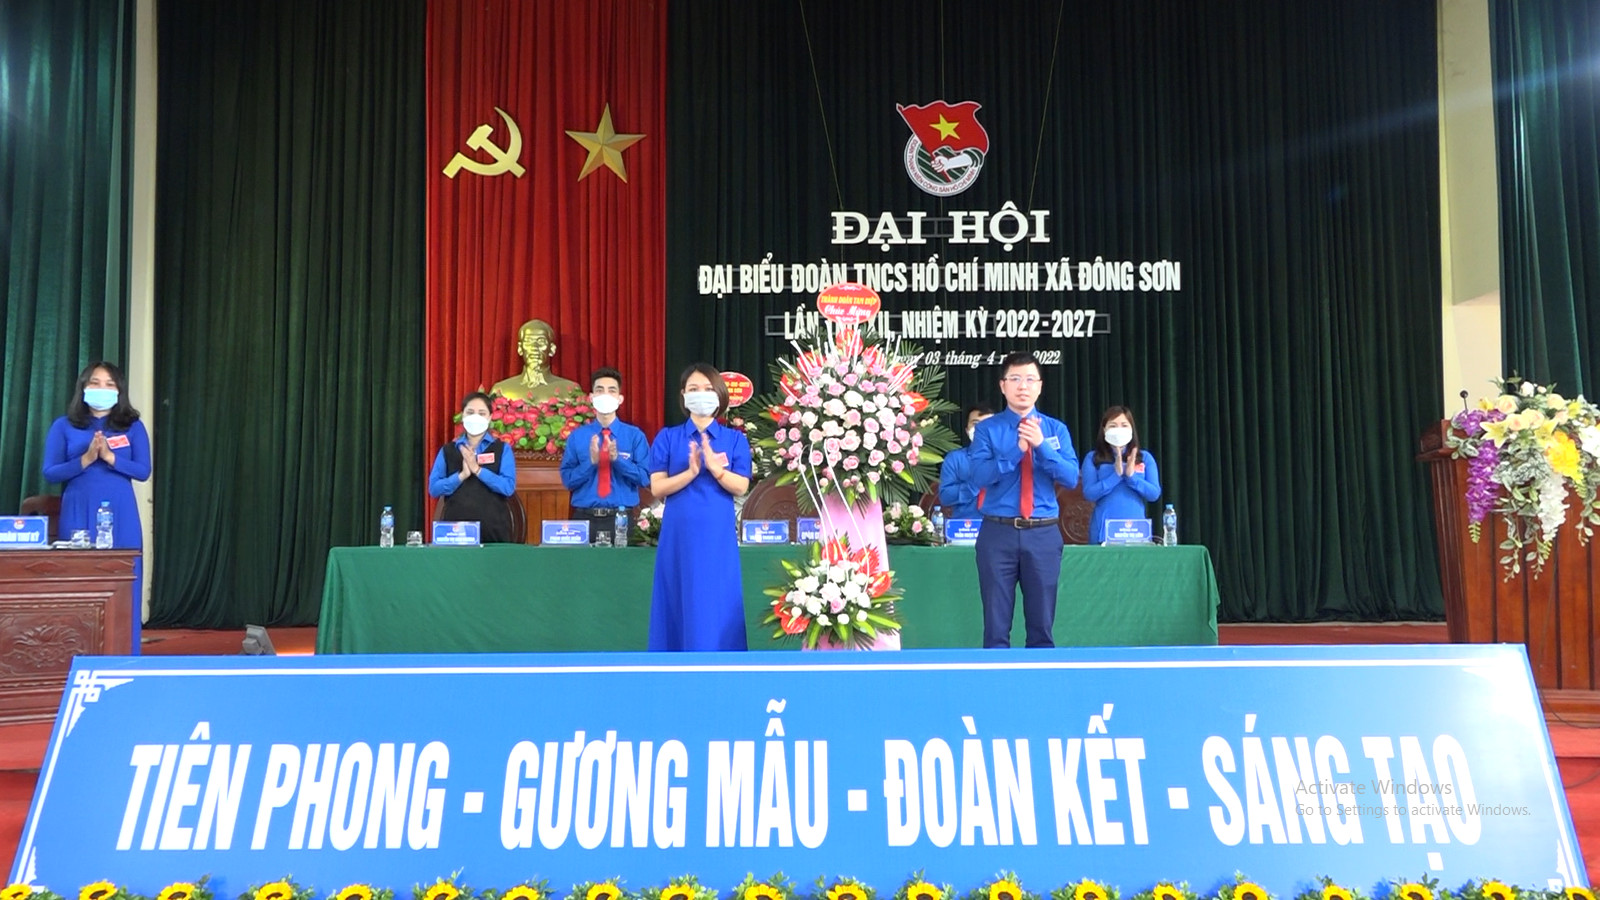 Đoàn TNCS Hồ Chí Minh xã Đông Sơn tổ chức Đại hội lần thứ XII nhiệm kỳ 2022-2027